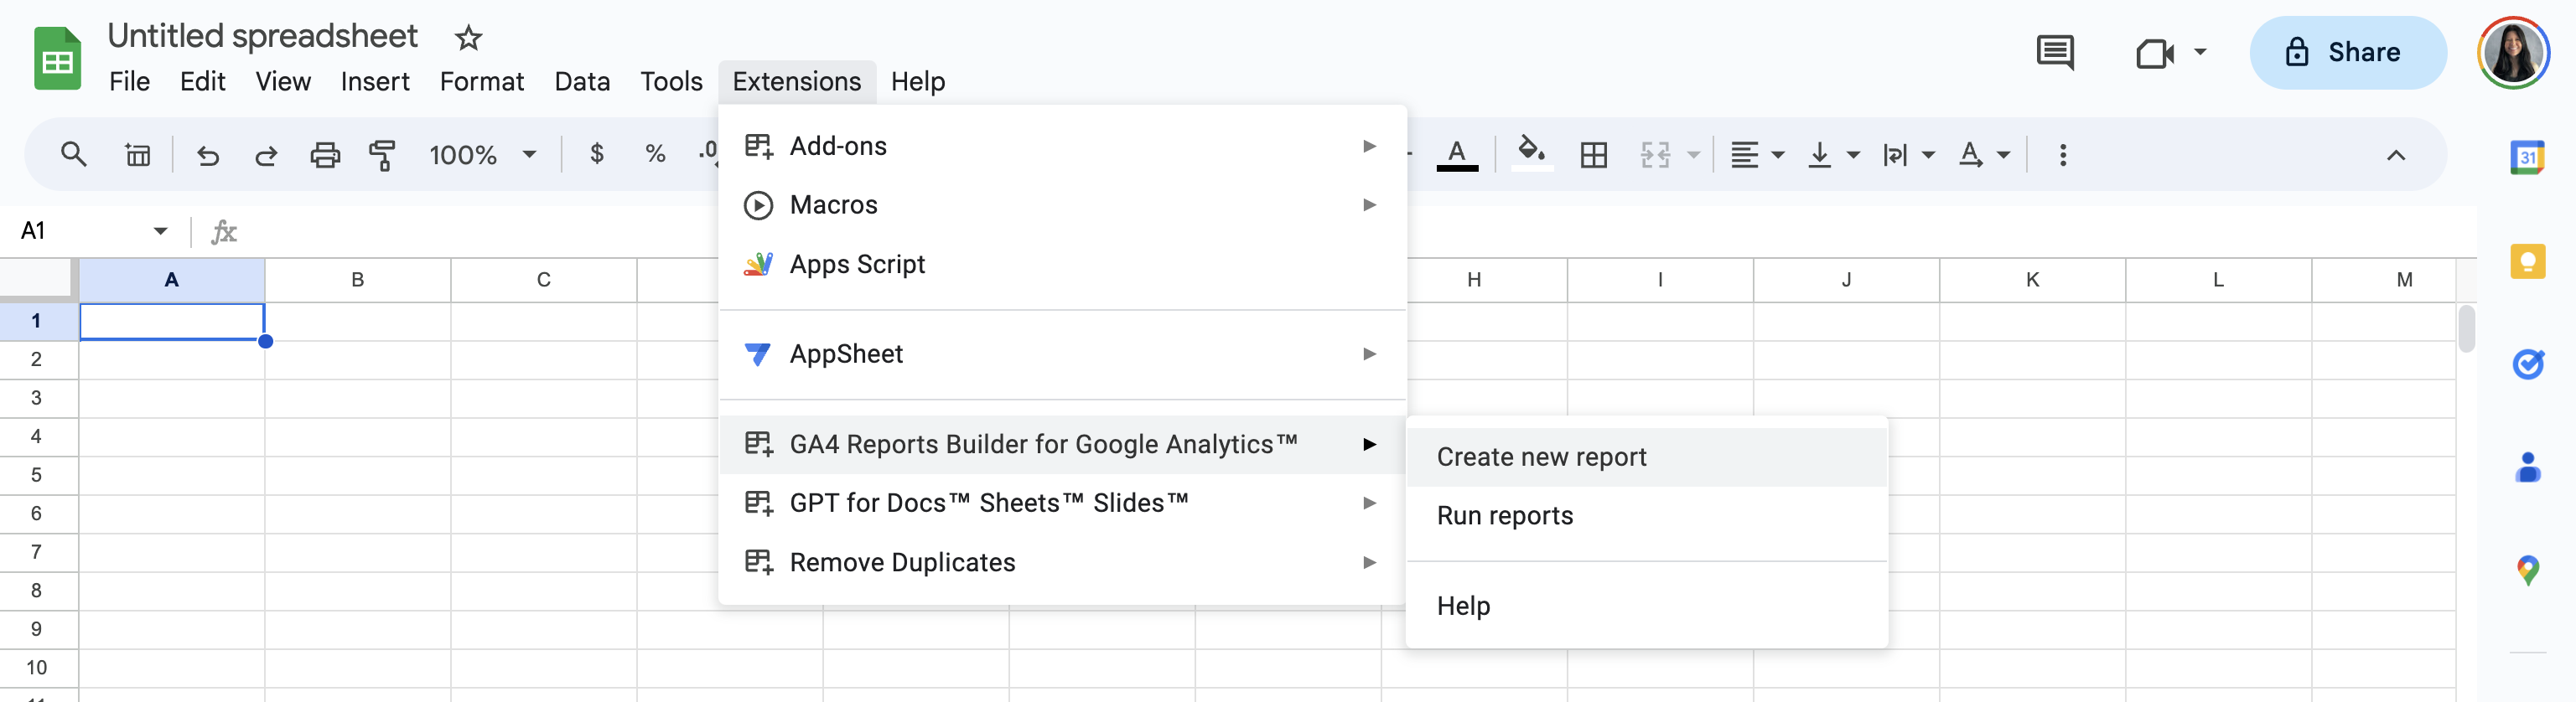 GA4 Reports Builder für Google Analytics-Erweiterung verfügbar